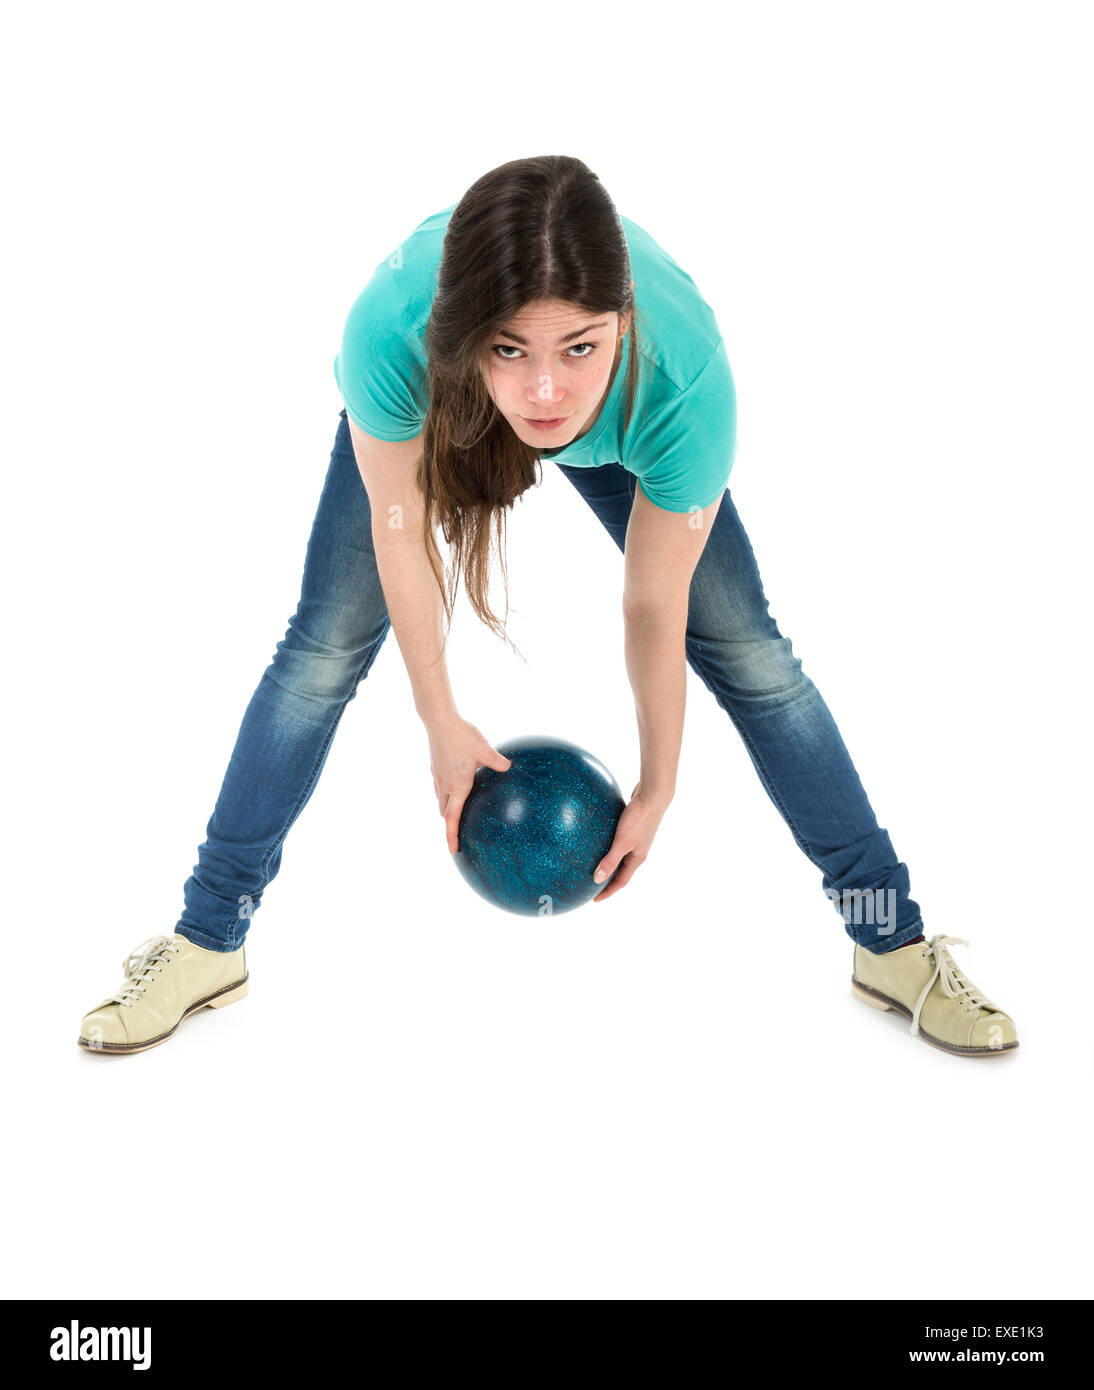 Frau wirft eine Bowling-Kugel auf eine simple Weise isoliert auf weiß Stockfoto